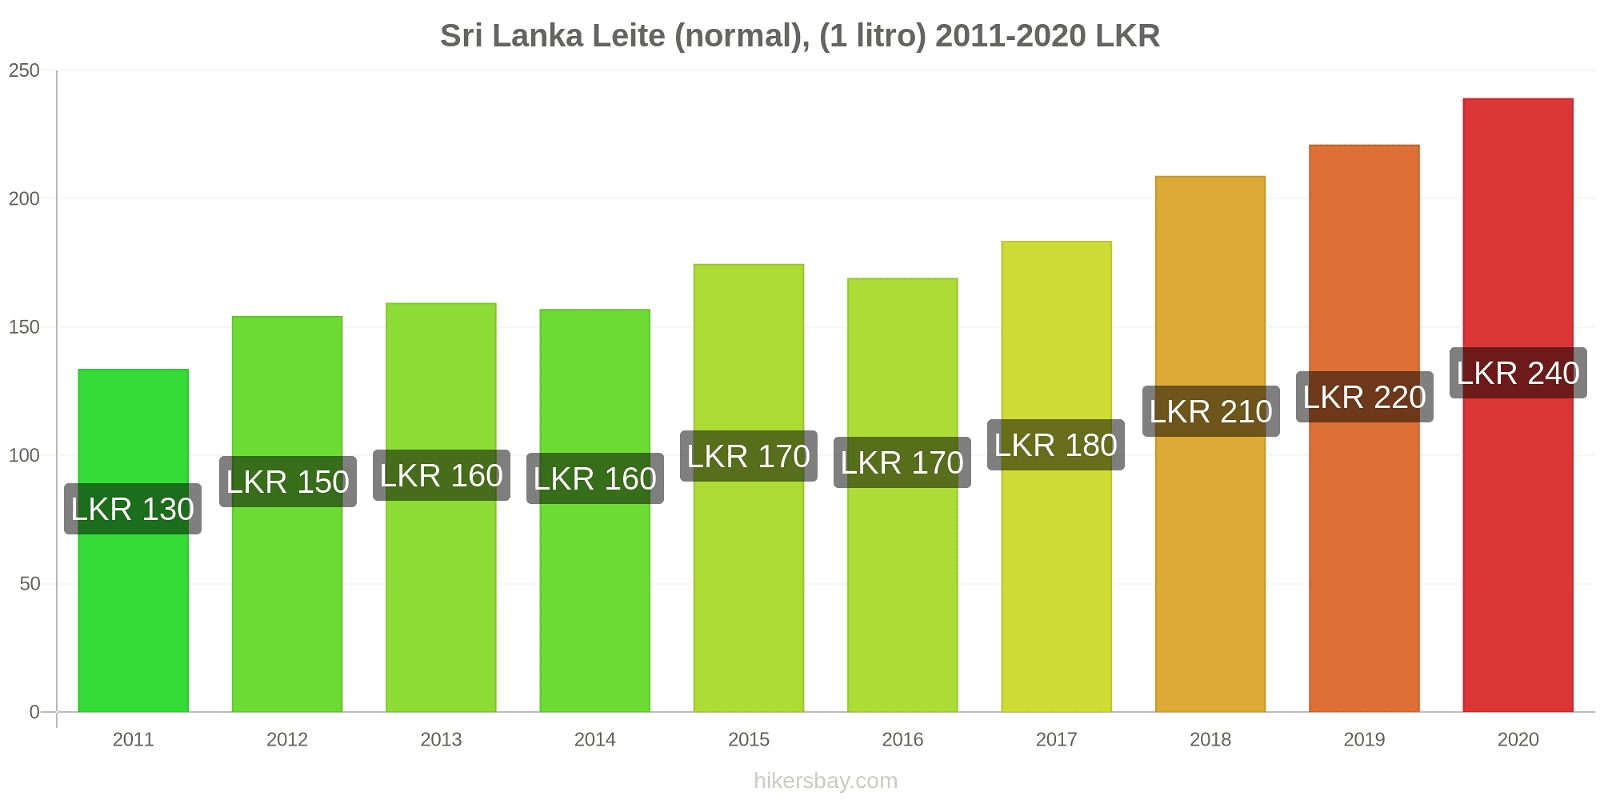 Sri Lanka variação de preço (Regular), leite (1 litro) hikersbay.com